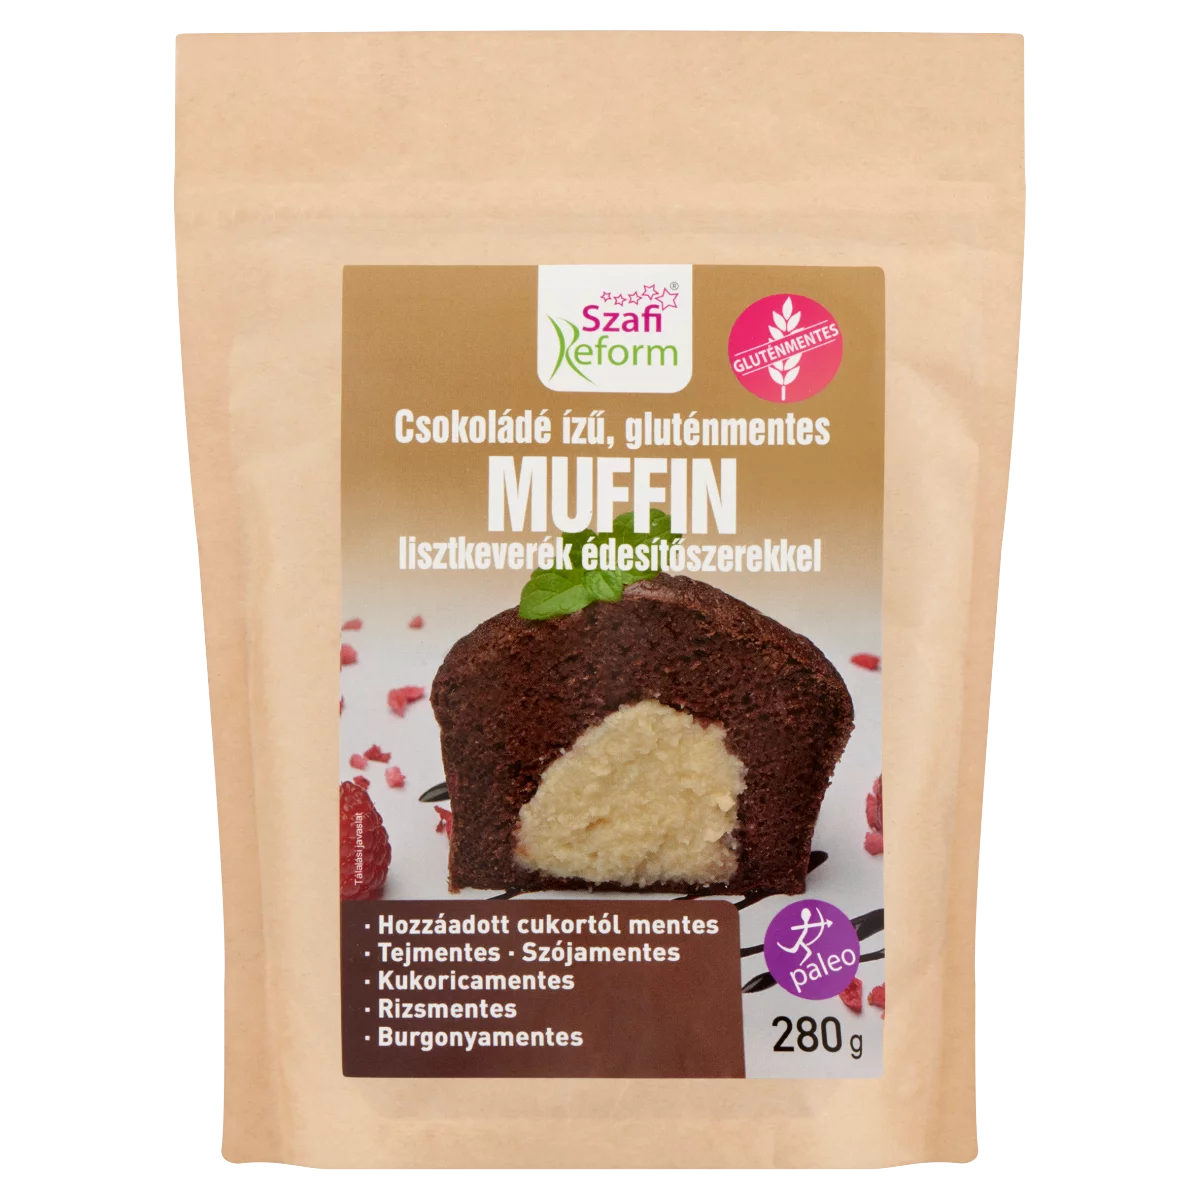 Szafi Reform csokoládé ízű, gluténmentes muffin lisztkeverék édesítőszerekkel 280 g